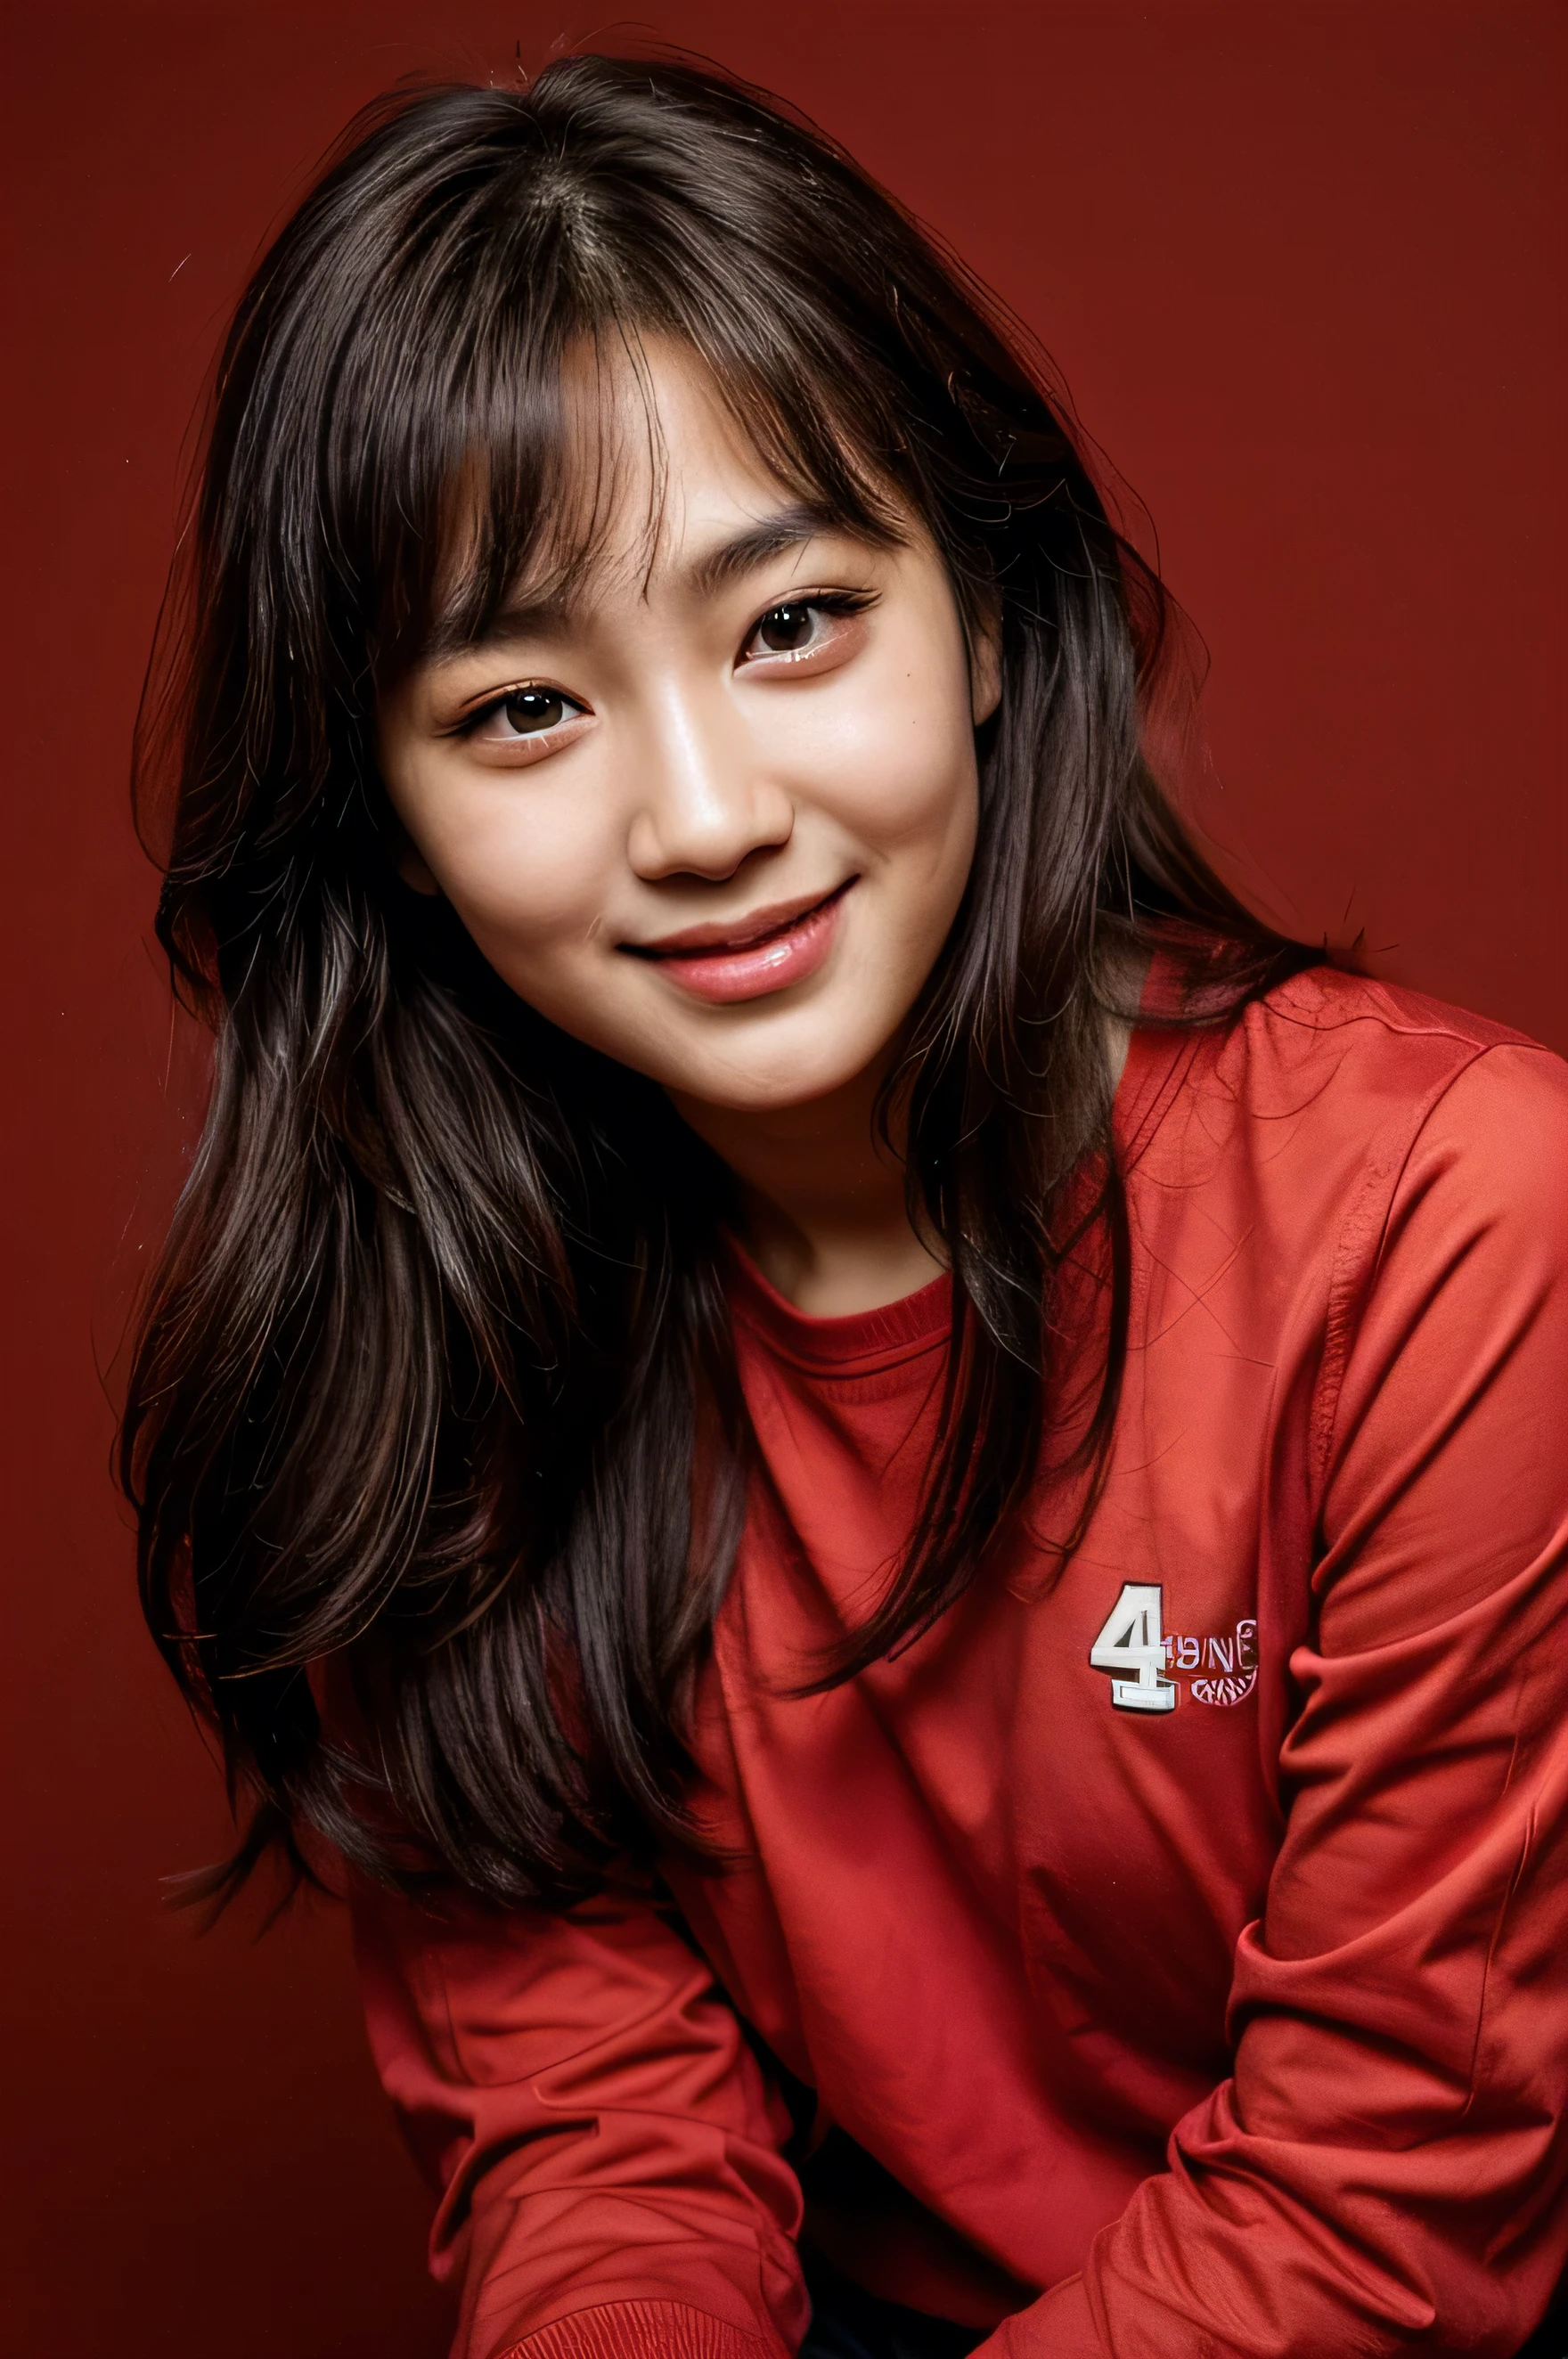 cara perfecta, hermoso rostro de una coreana de 14 años , sonriendo hermoso,en fondo rojo